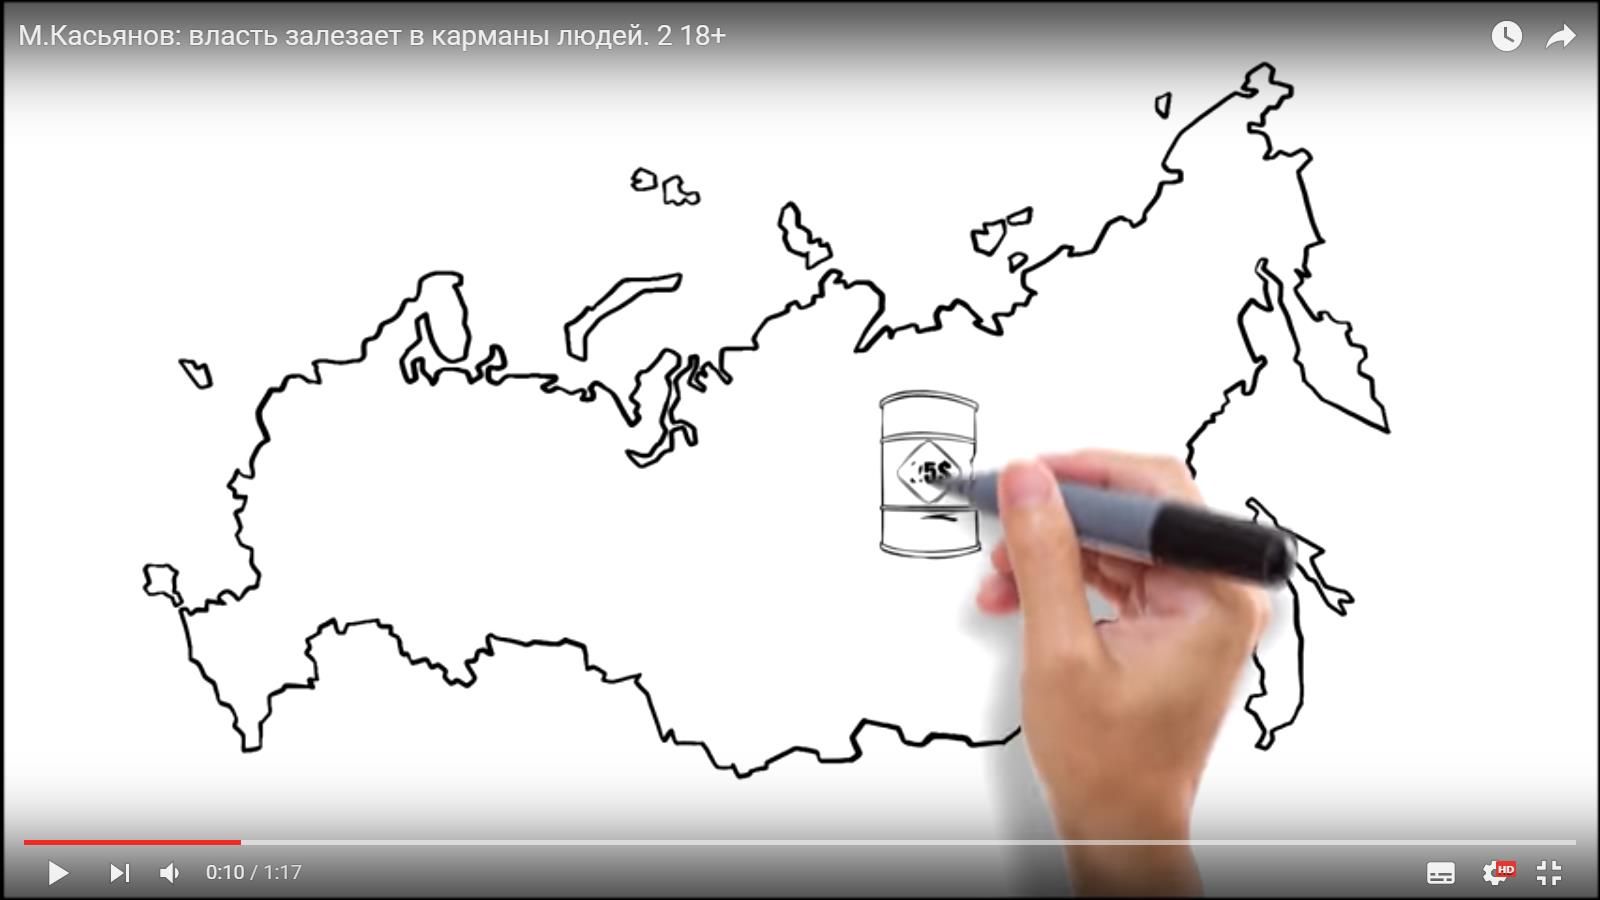 Російський опозиціонер Касьянов «погорів» на «Кримнаші» (відео)